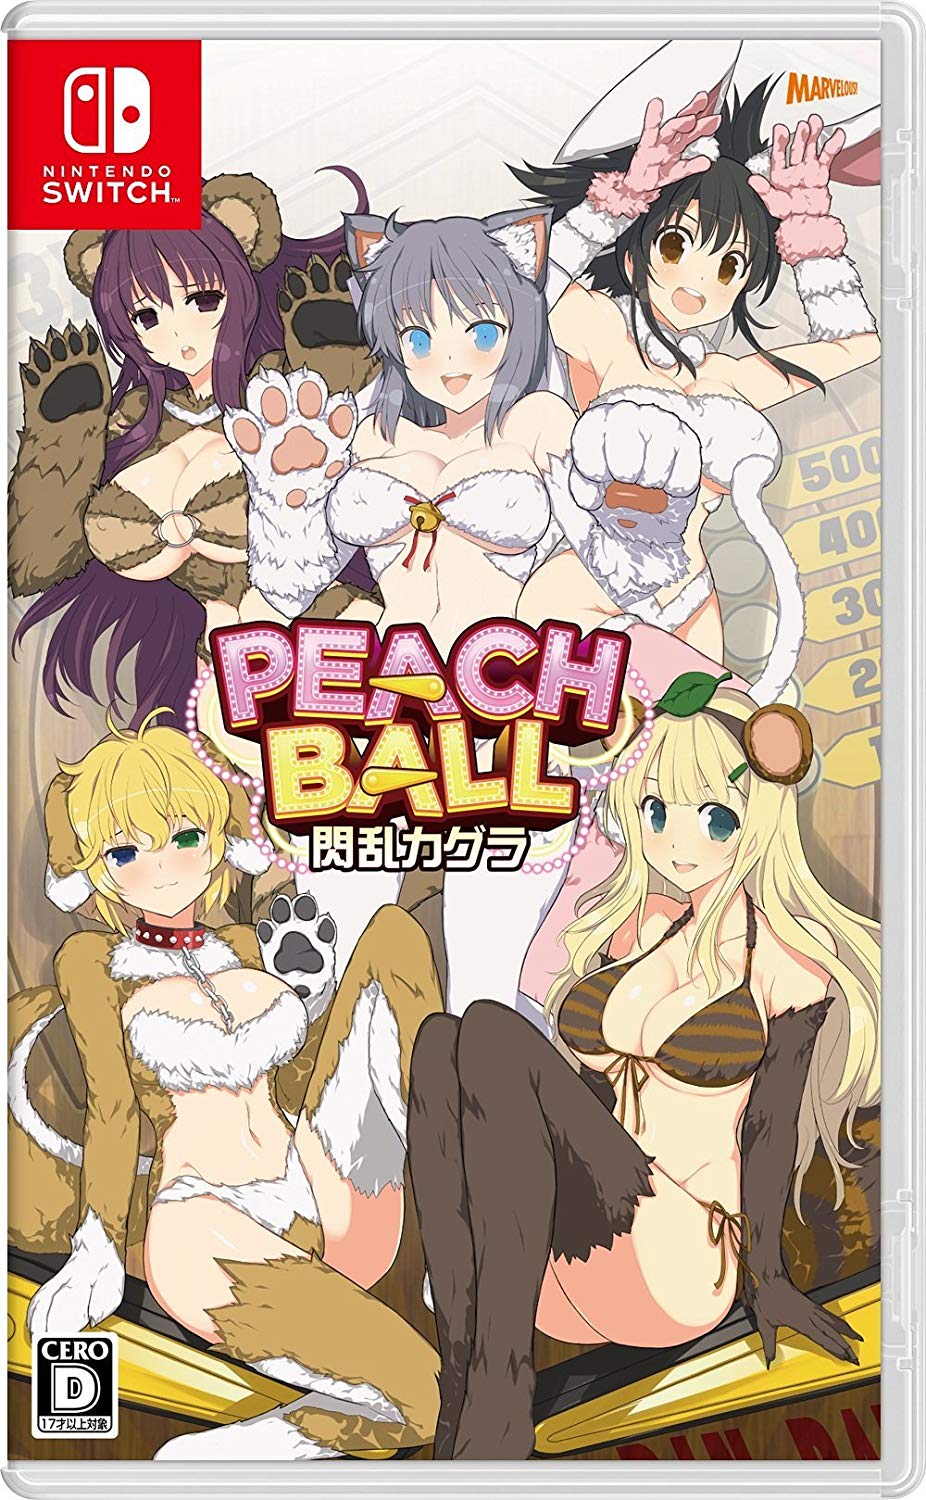 Senran Kagura Peach Ball - Ficha Técnica